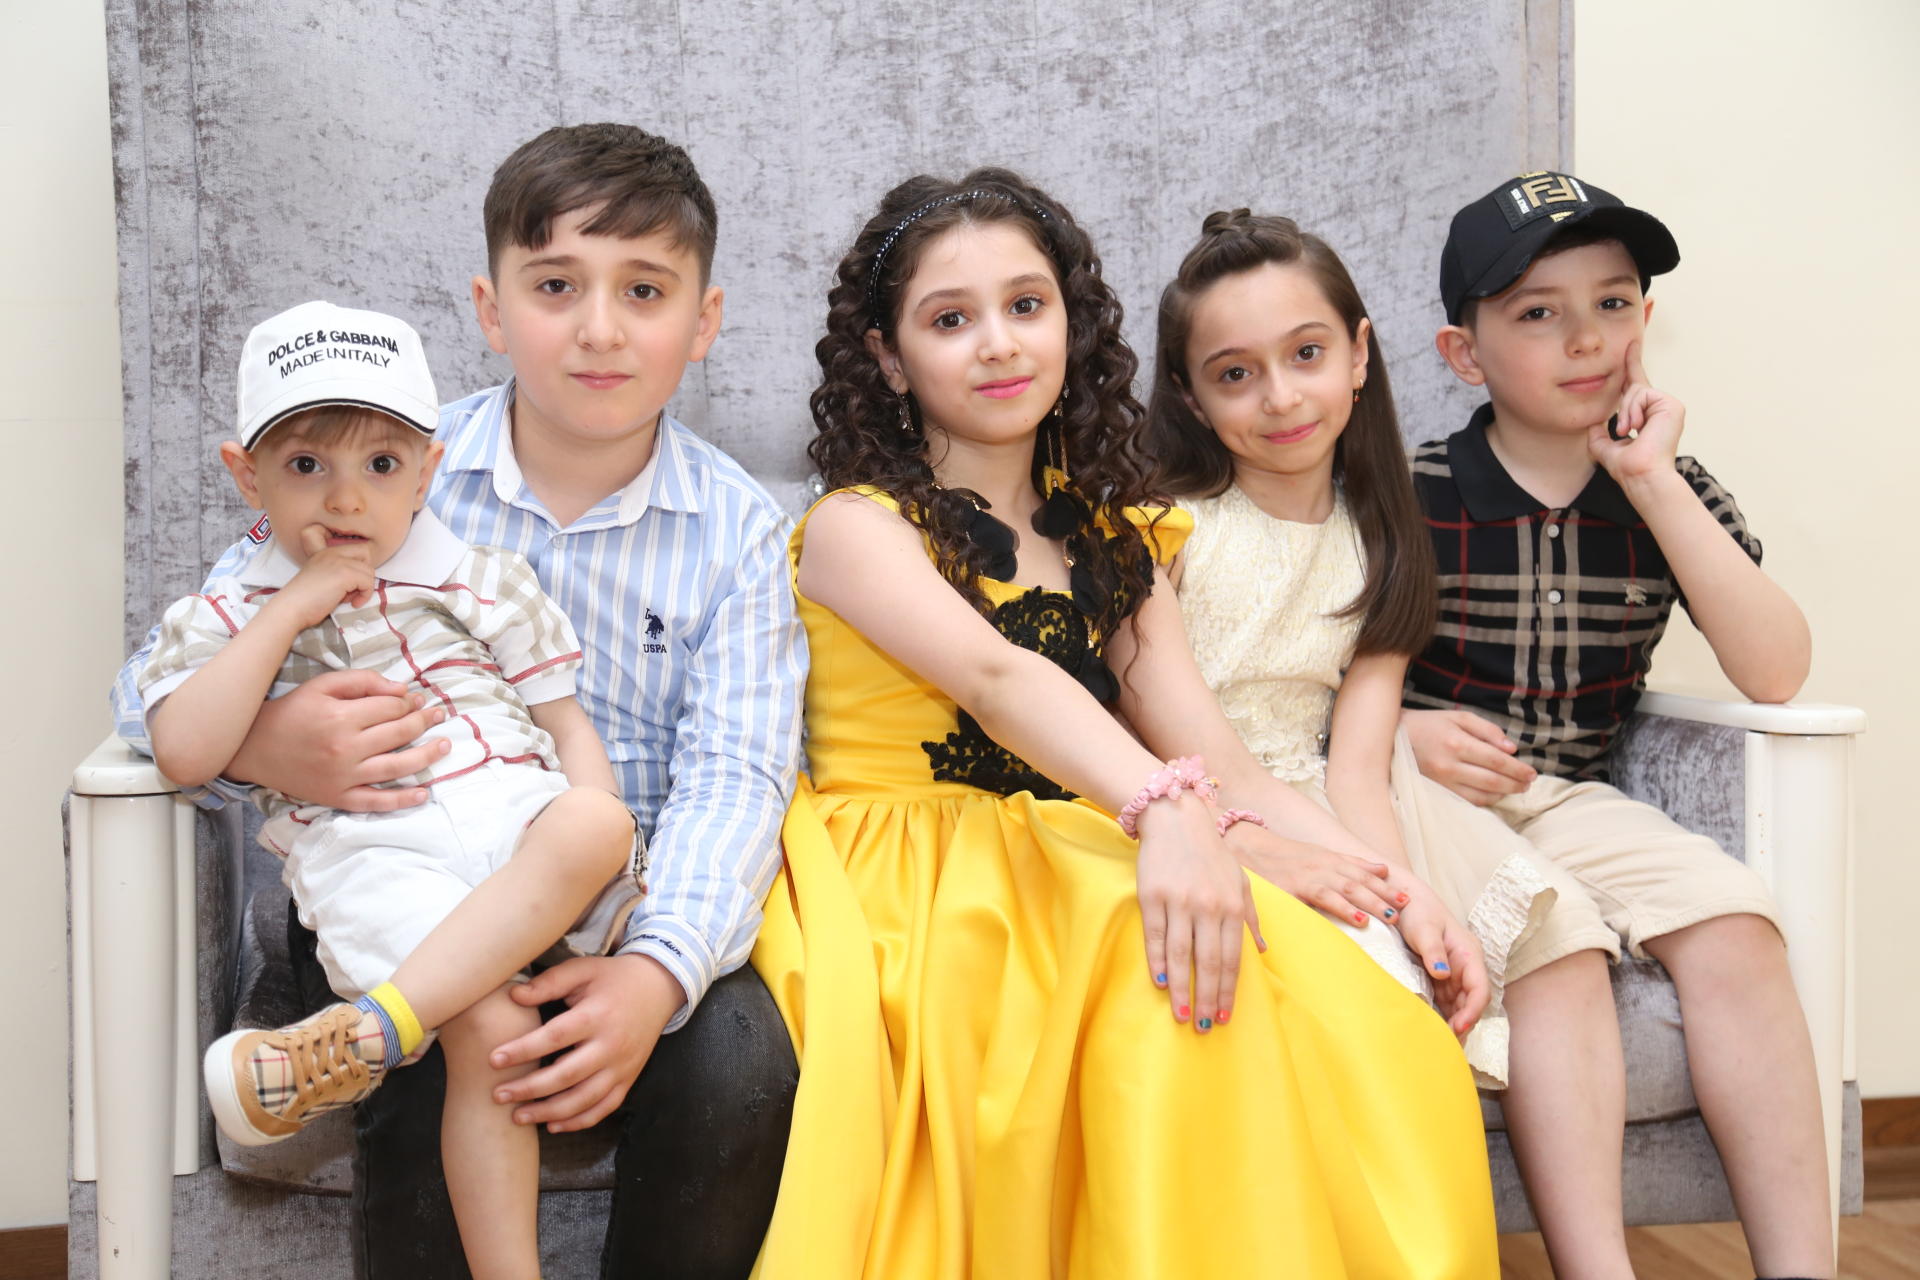 В Азербайджане определены самые стильные, красивые и счастливые семьи (ФОТО)